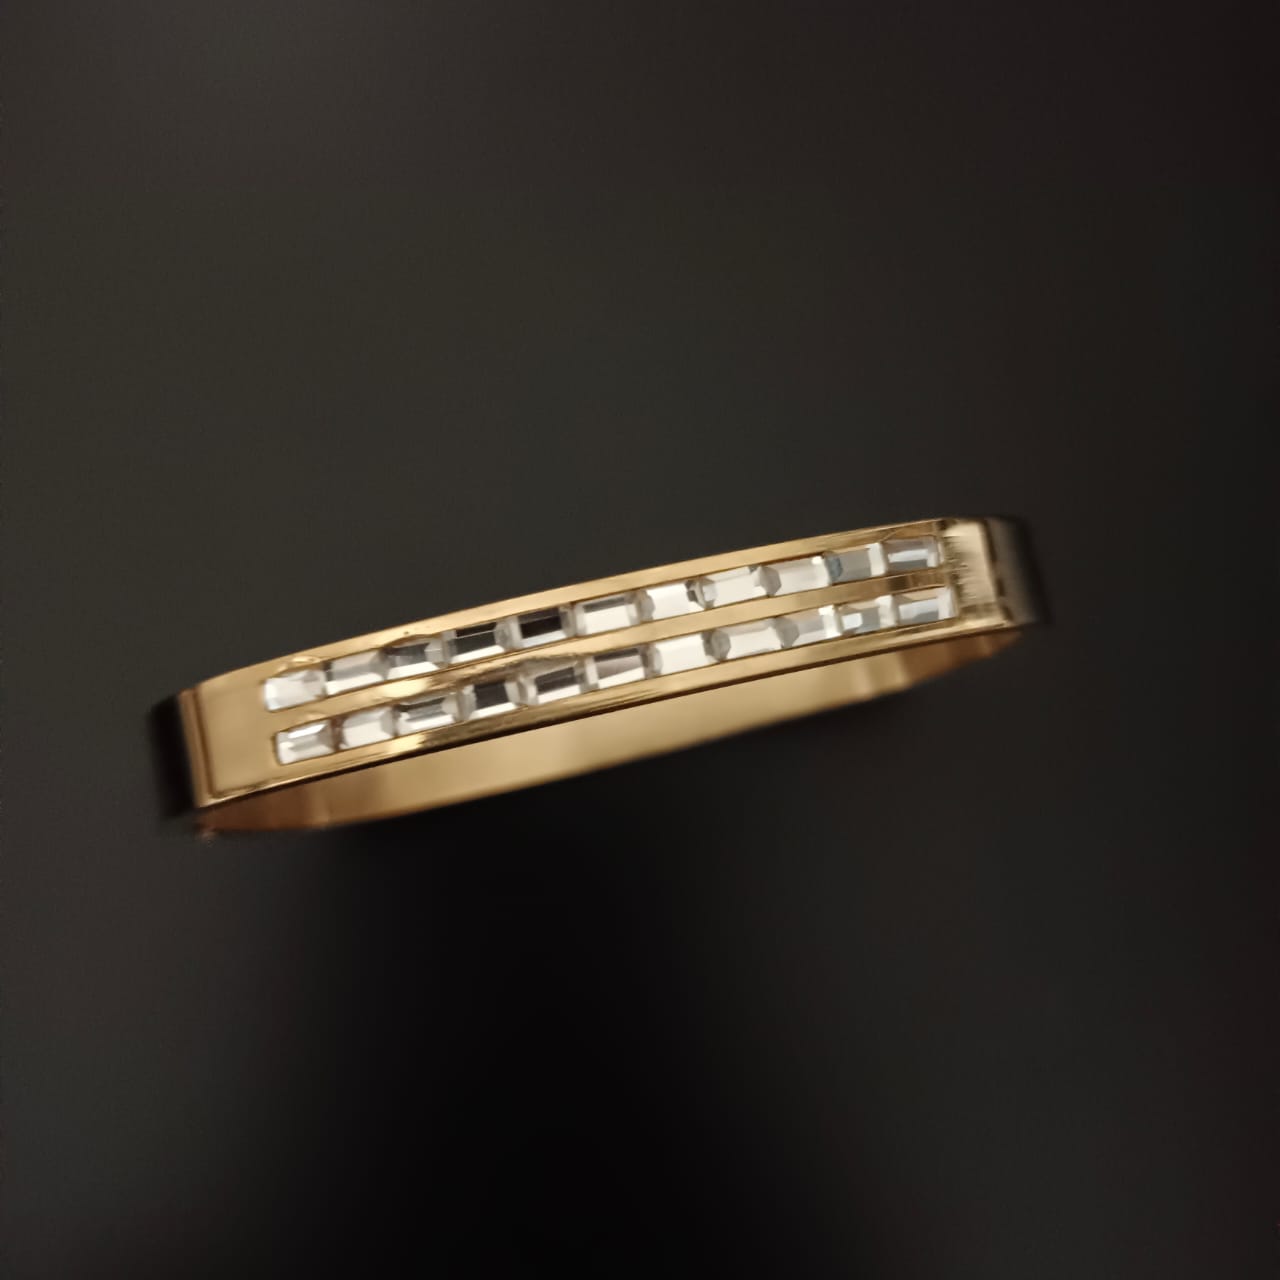 New Golden Rectangular Style Design Diamond Bracelet For Women and Girl